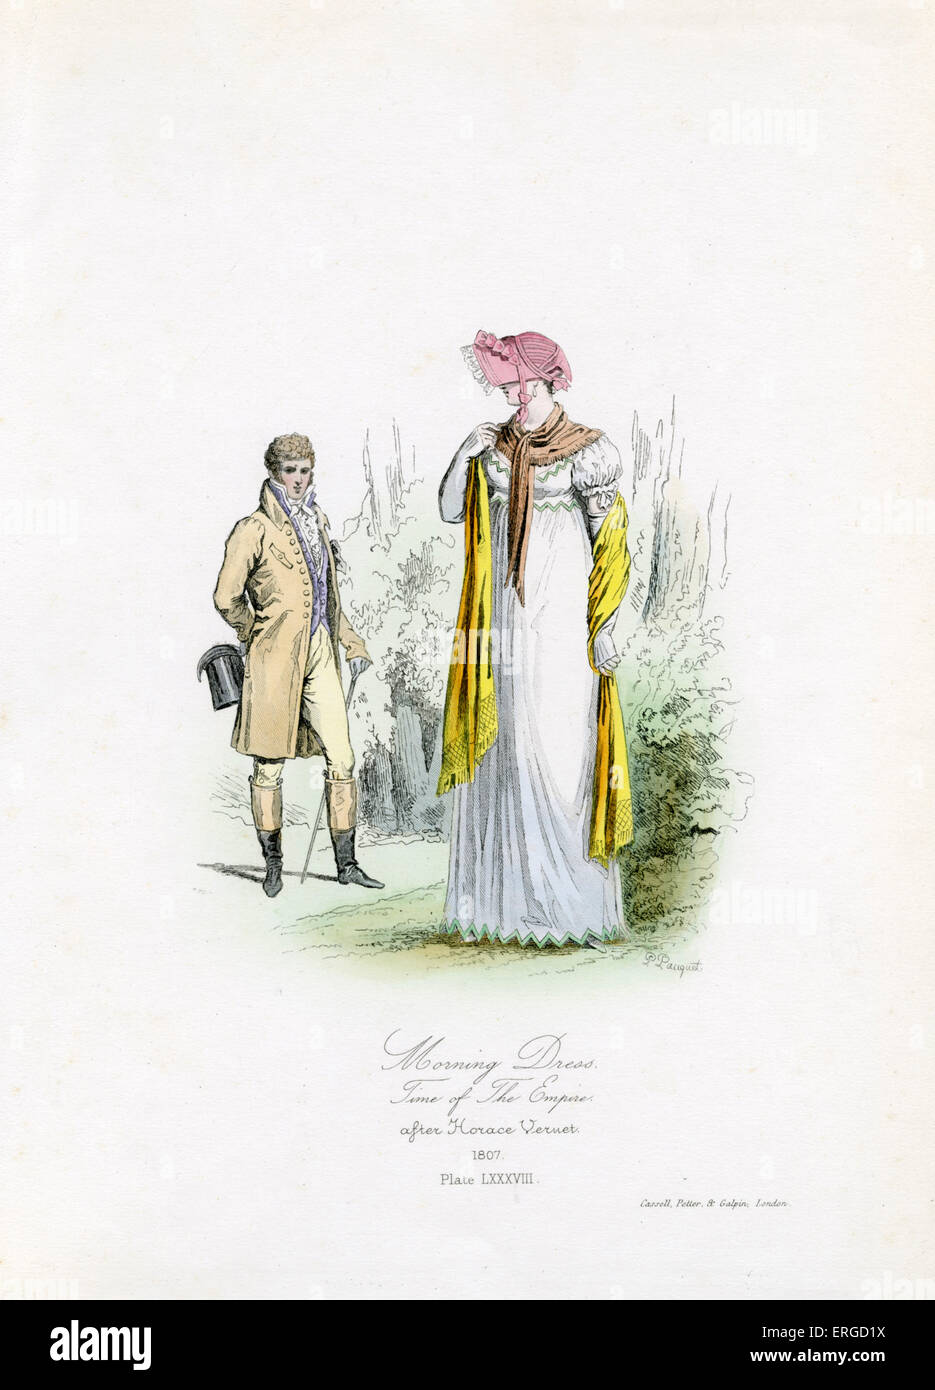 Vestirse por la mañana durante la época del Imperio, 1807 - desde el grabado por pulidor Pauquet después de Horace Vernet. El Imperio Francés Foto de stock